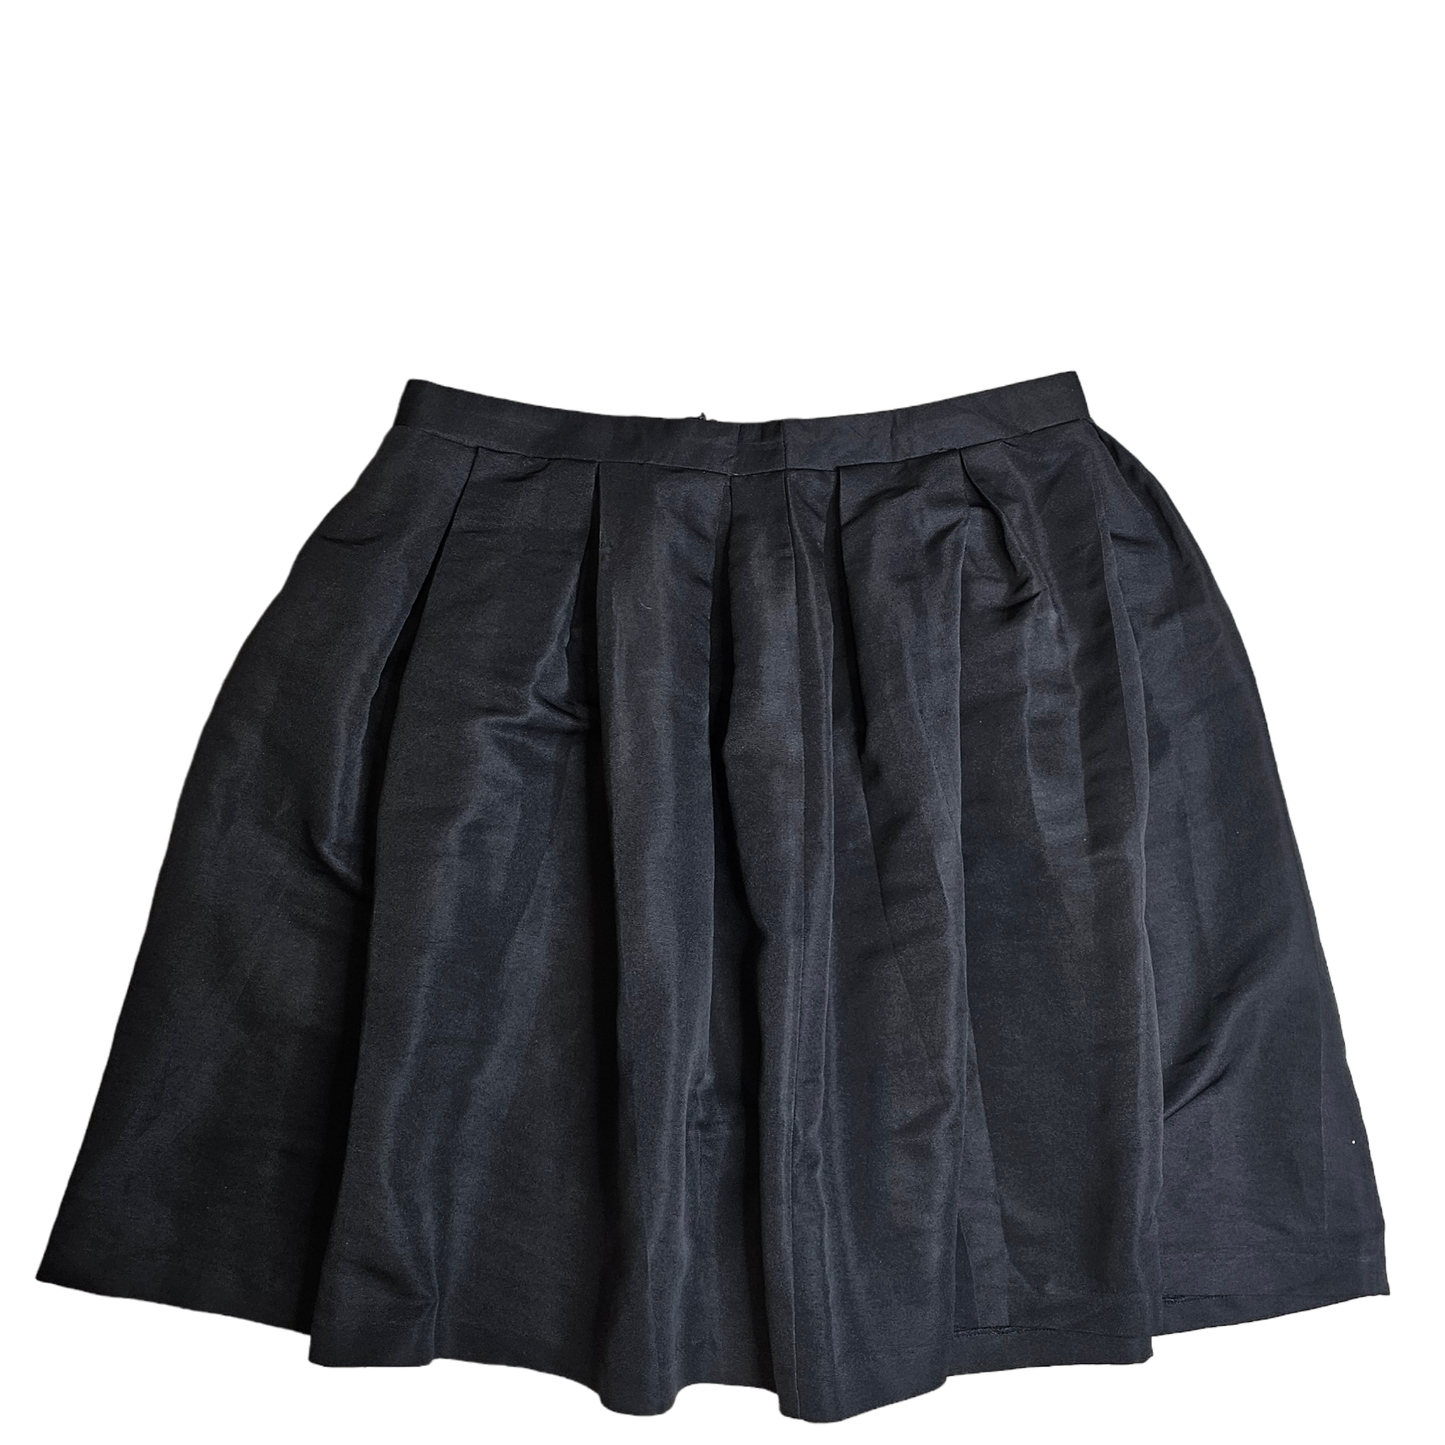 Skirt Mini & Short By Forever 21  Size: 2x